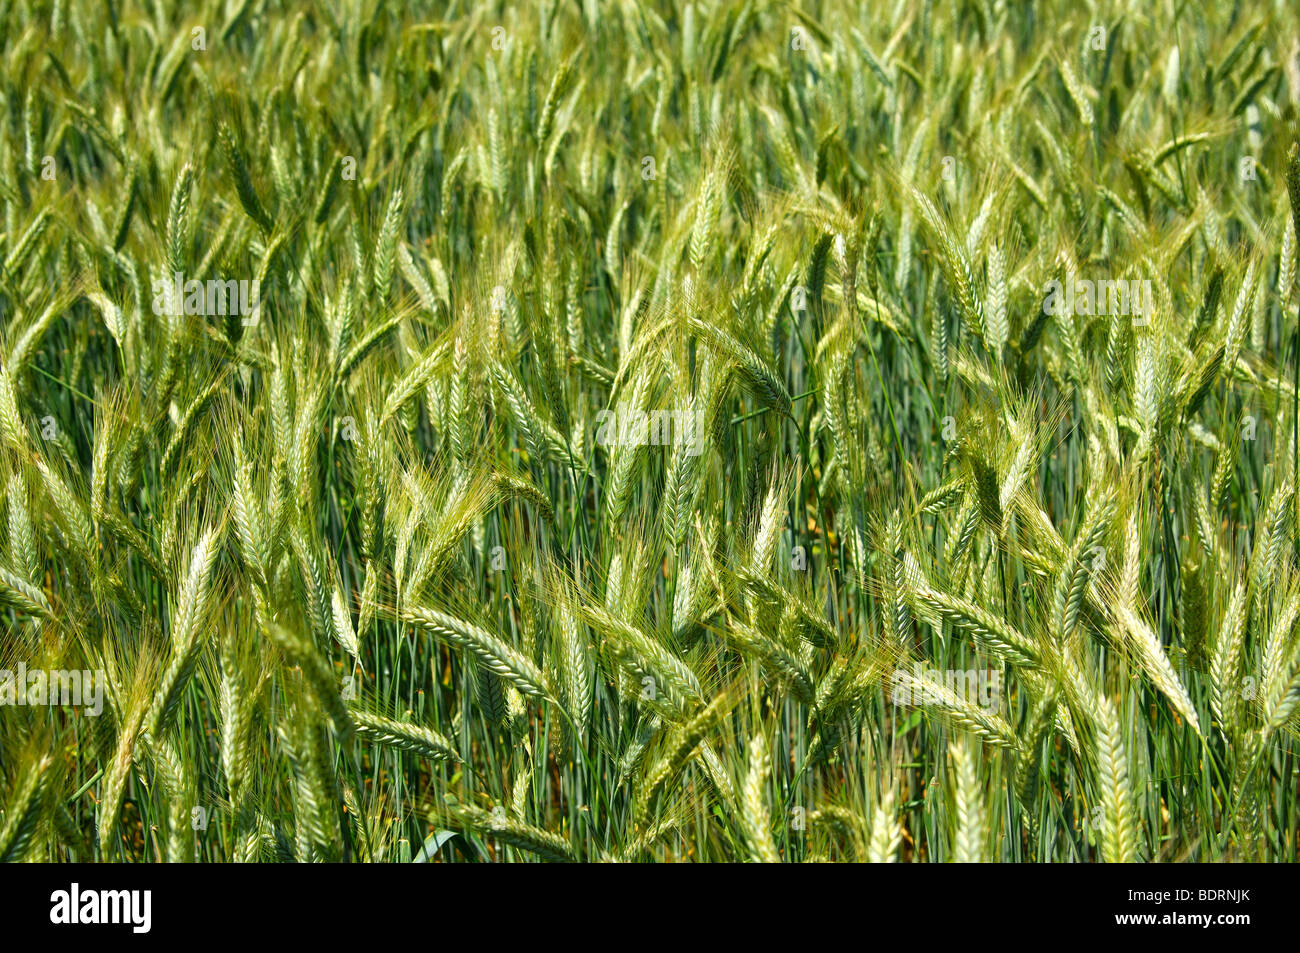 Unripe ears of rye on a field Stock Photo